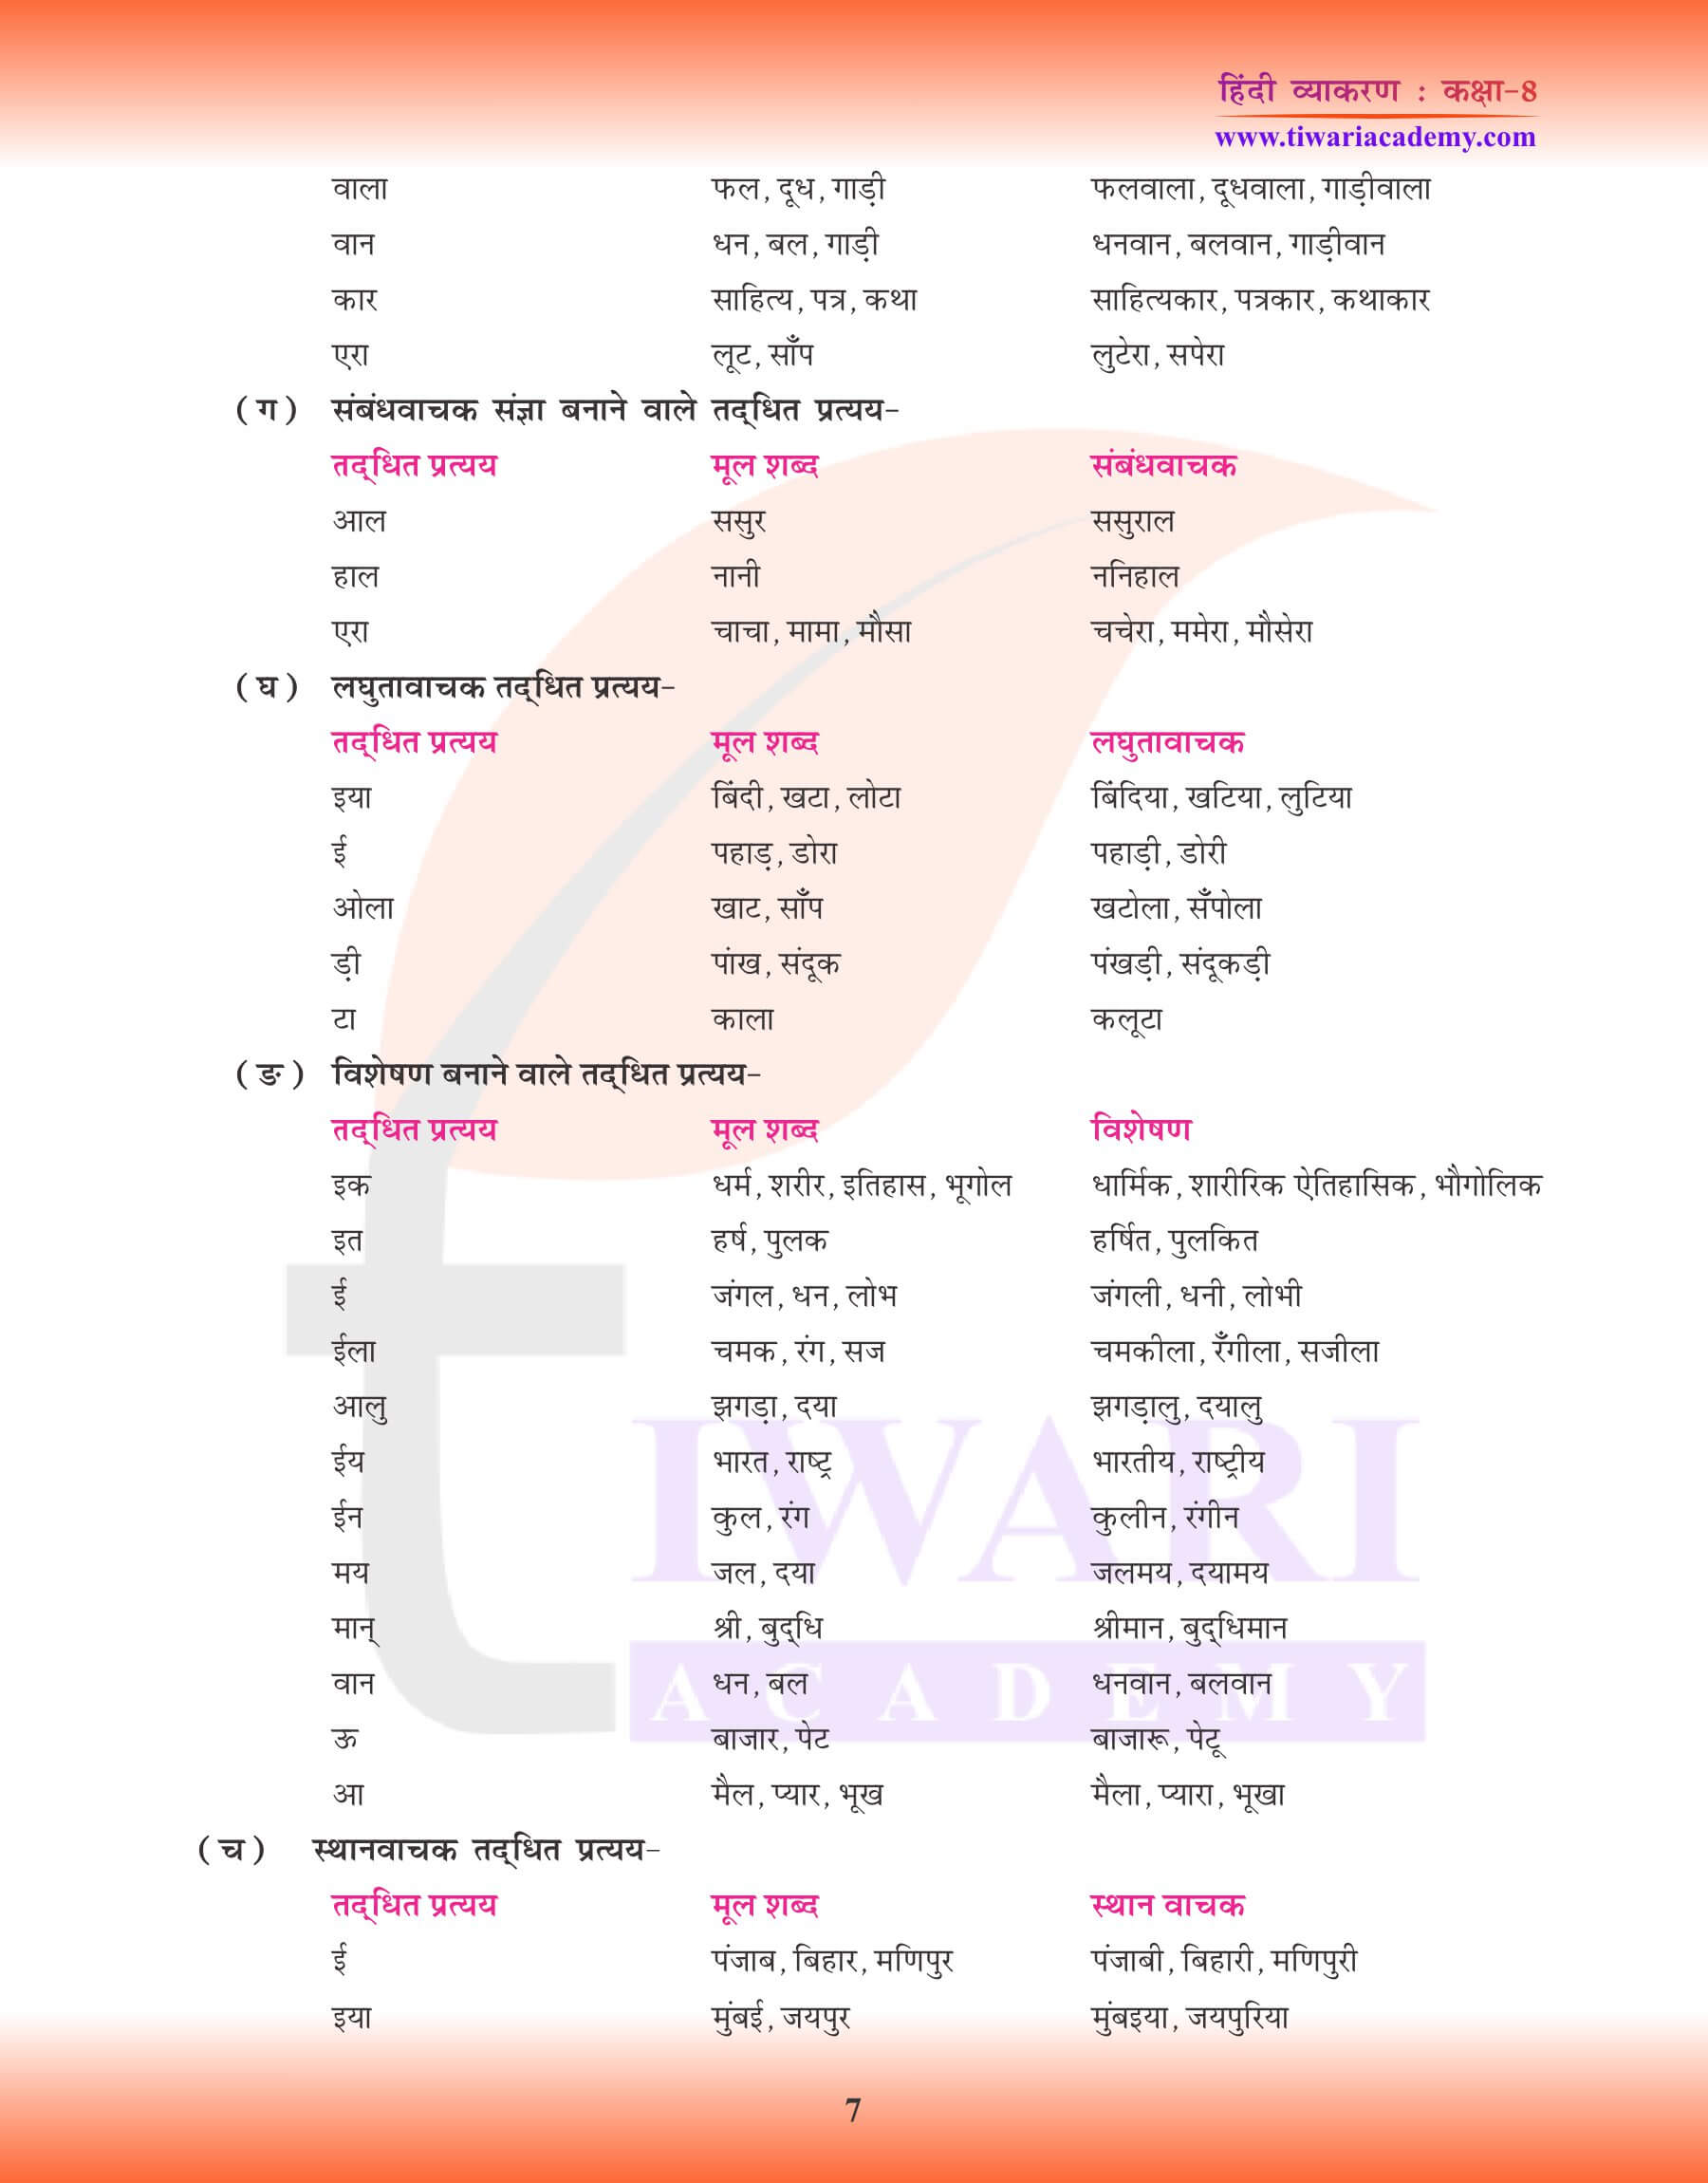 कक्षा 8 हिंदी व्याकरण में उपसर्ग के उदाहरण